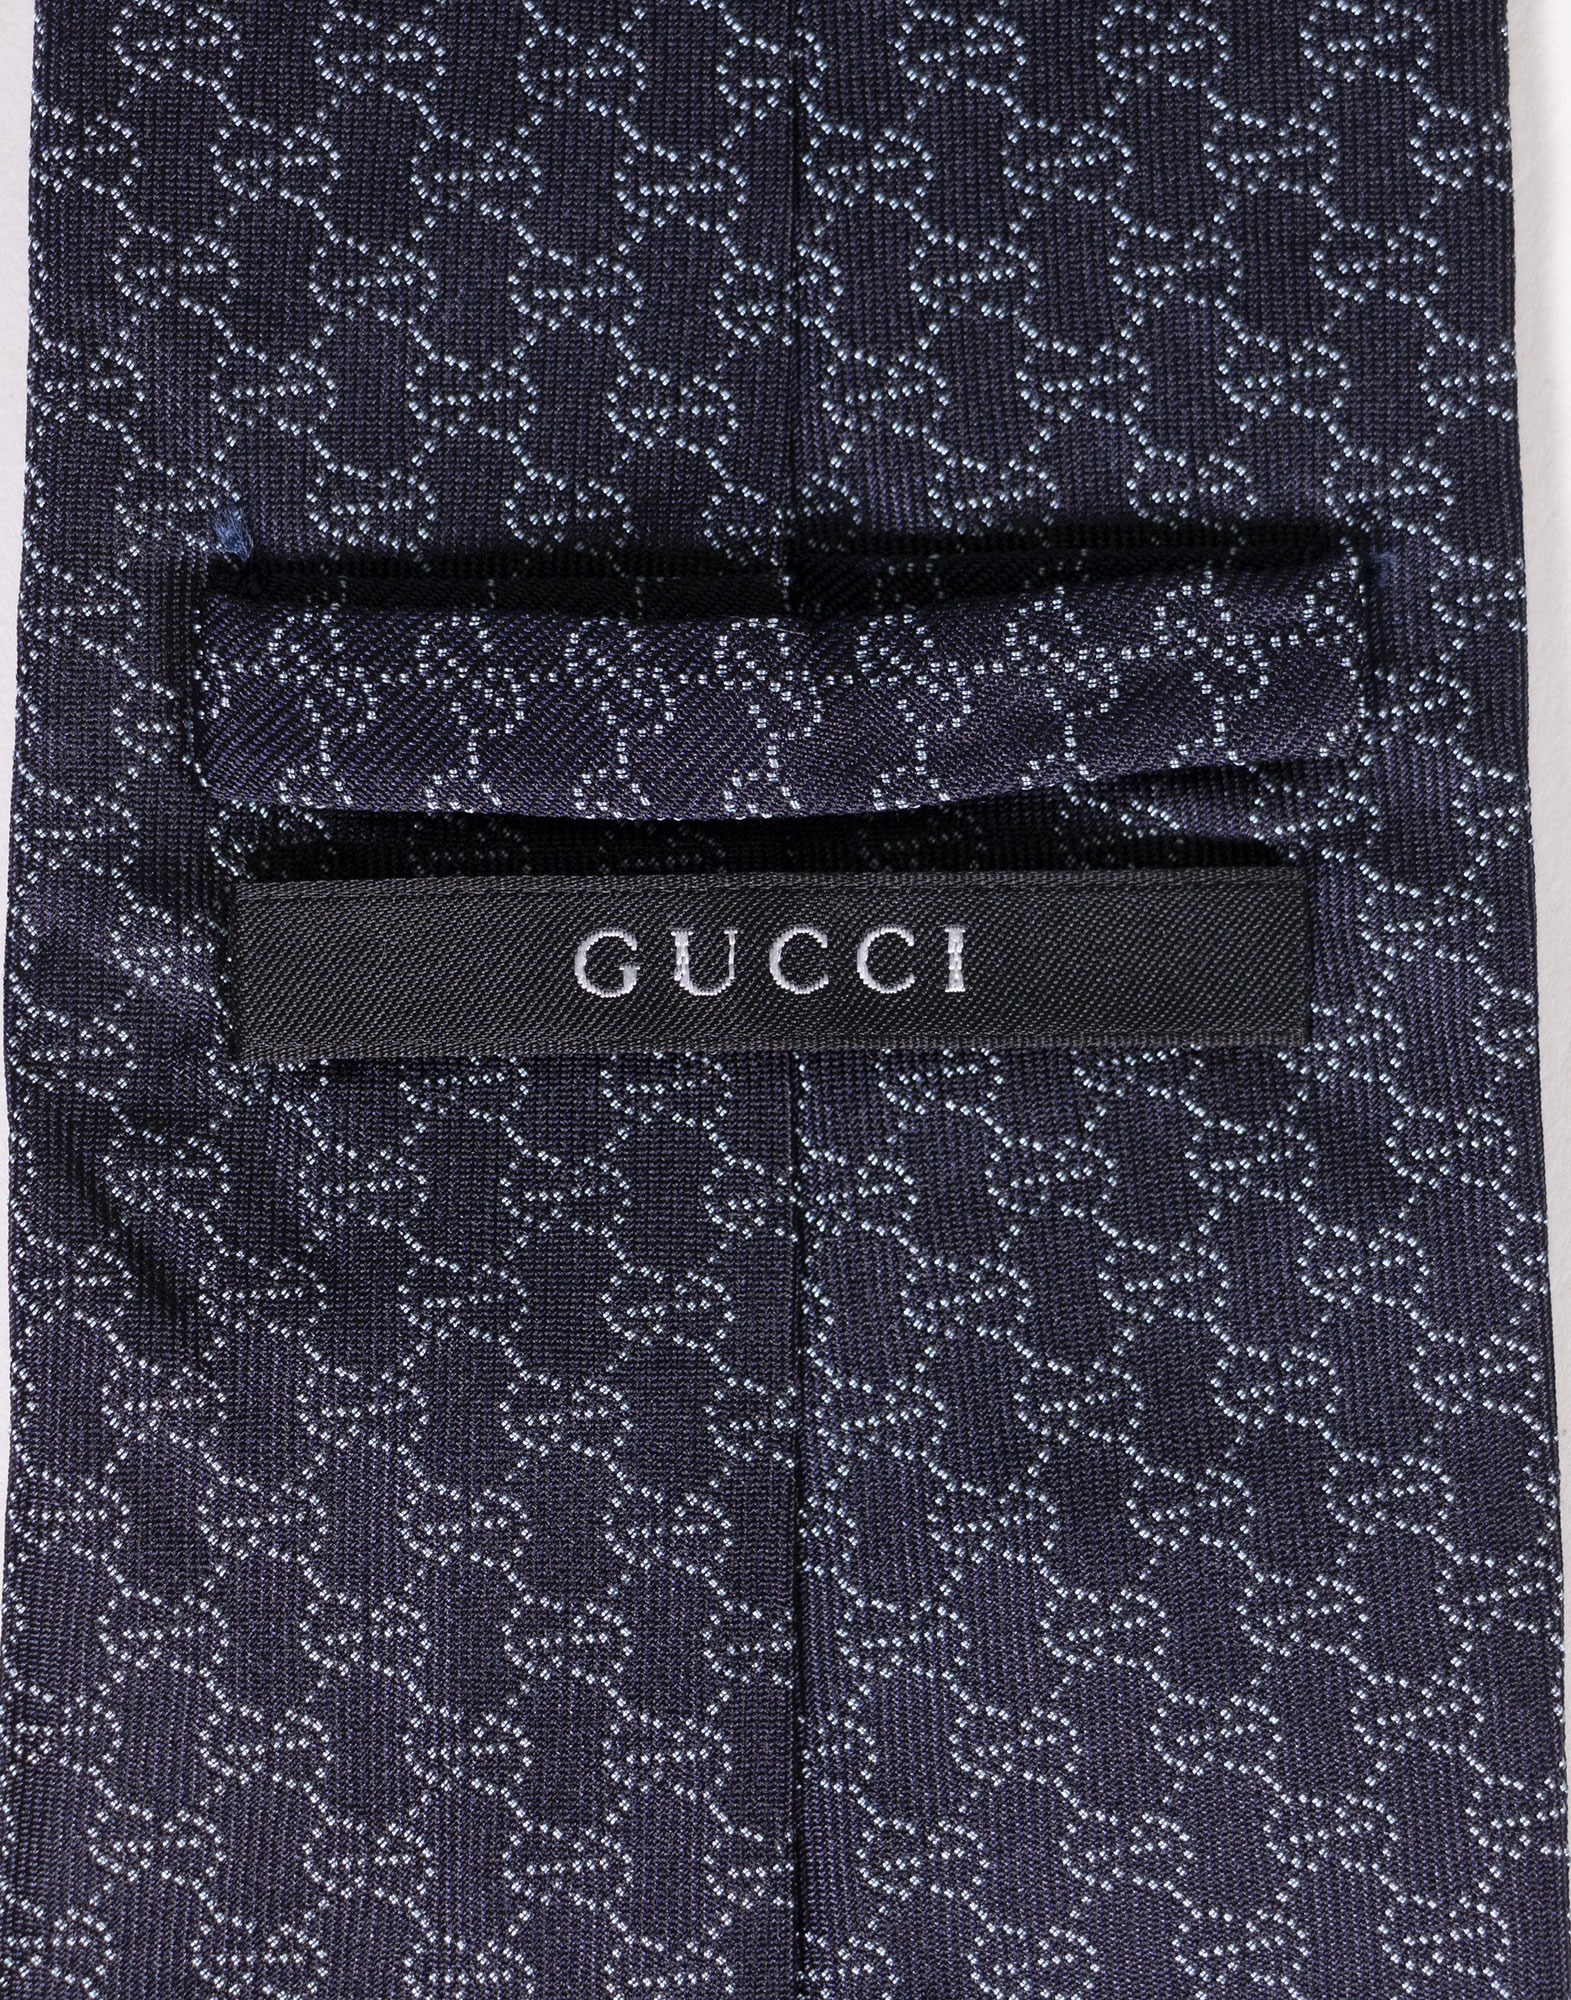 Gucci - GG monogram necktie